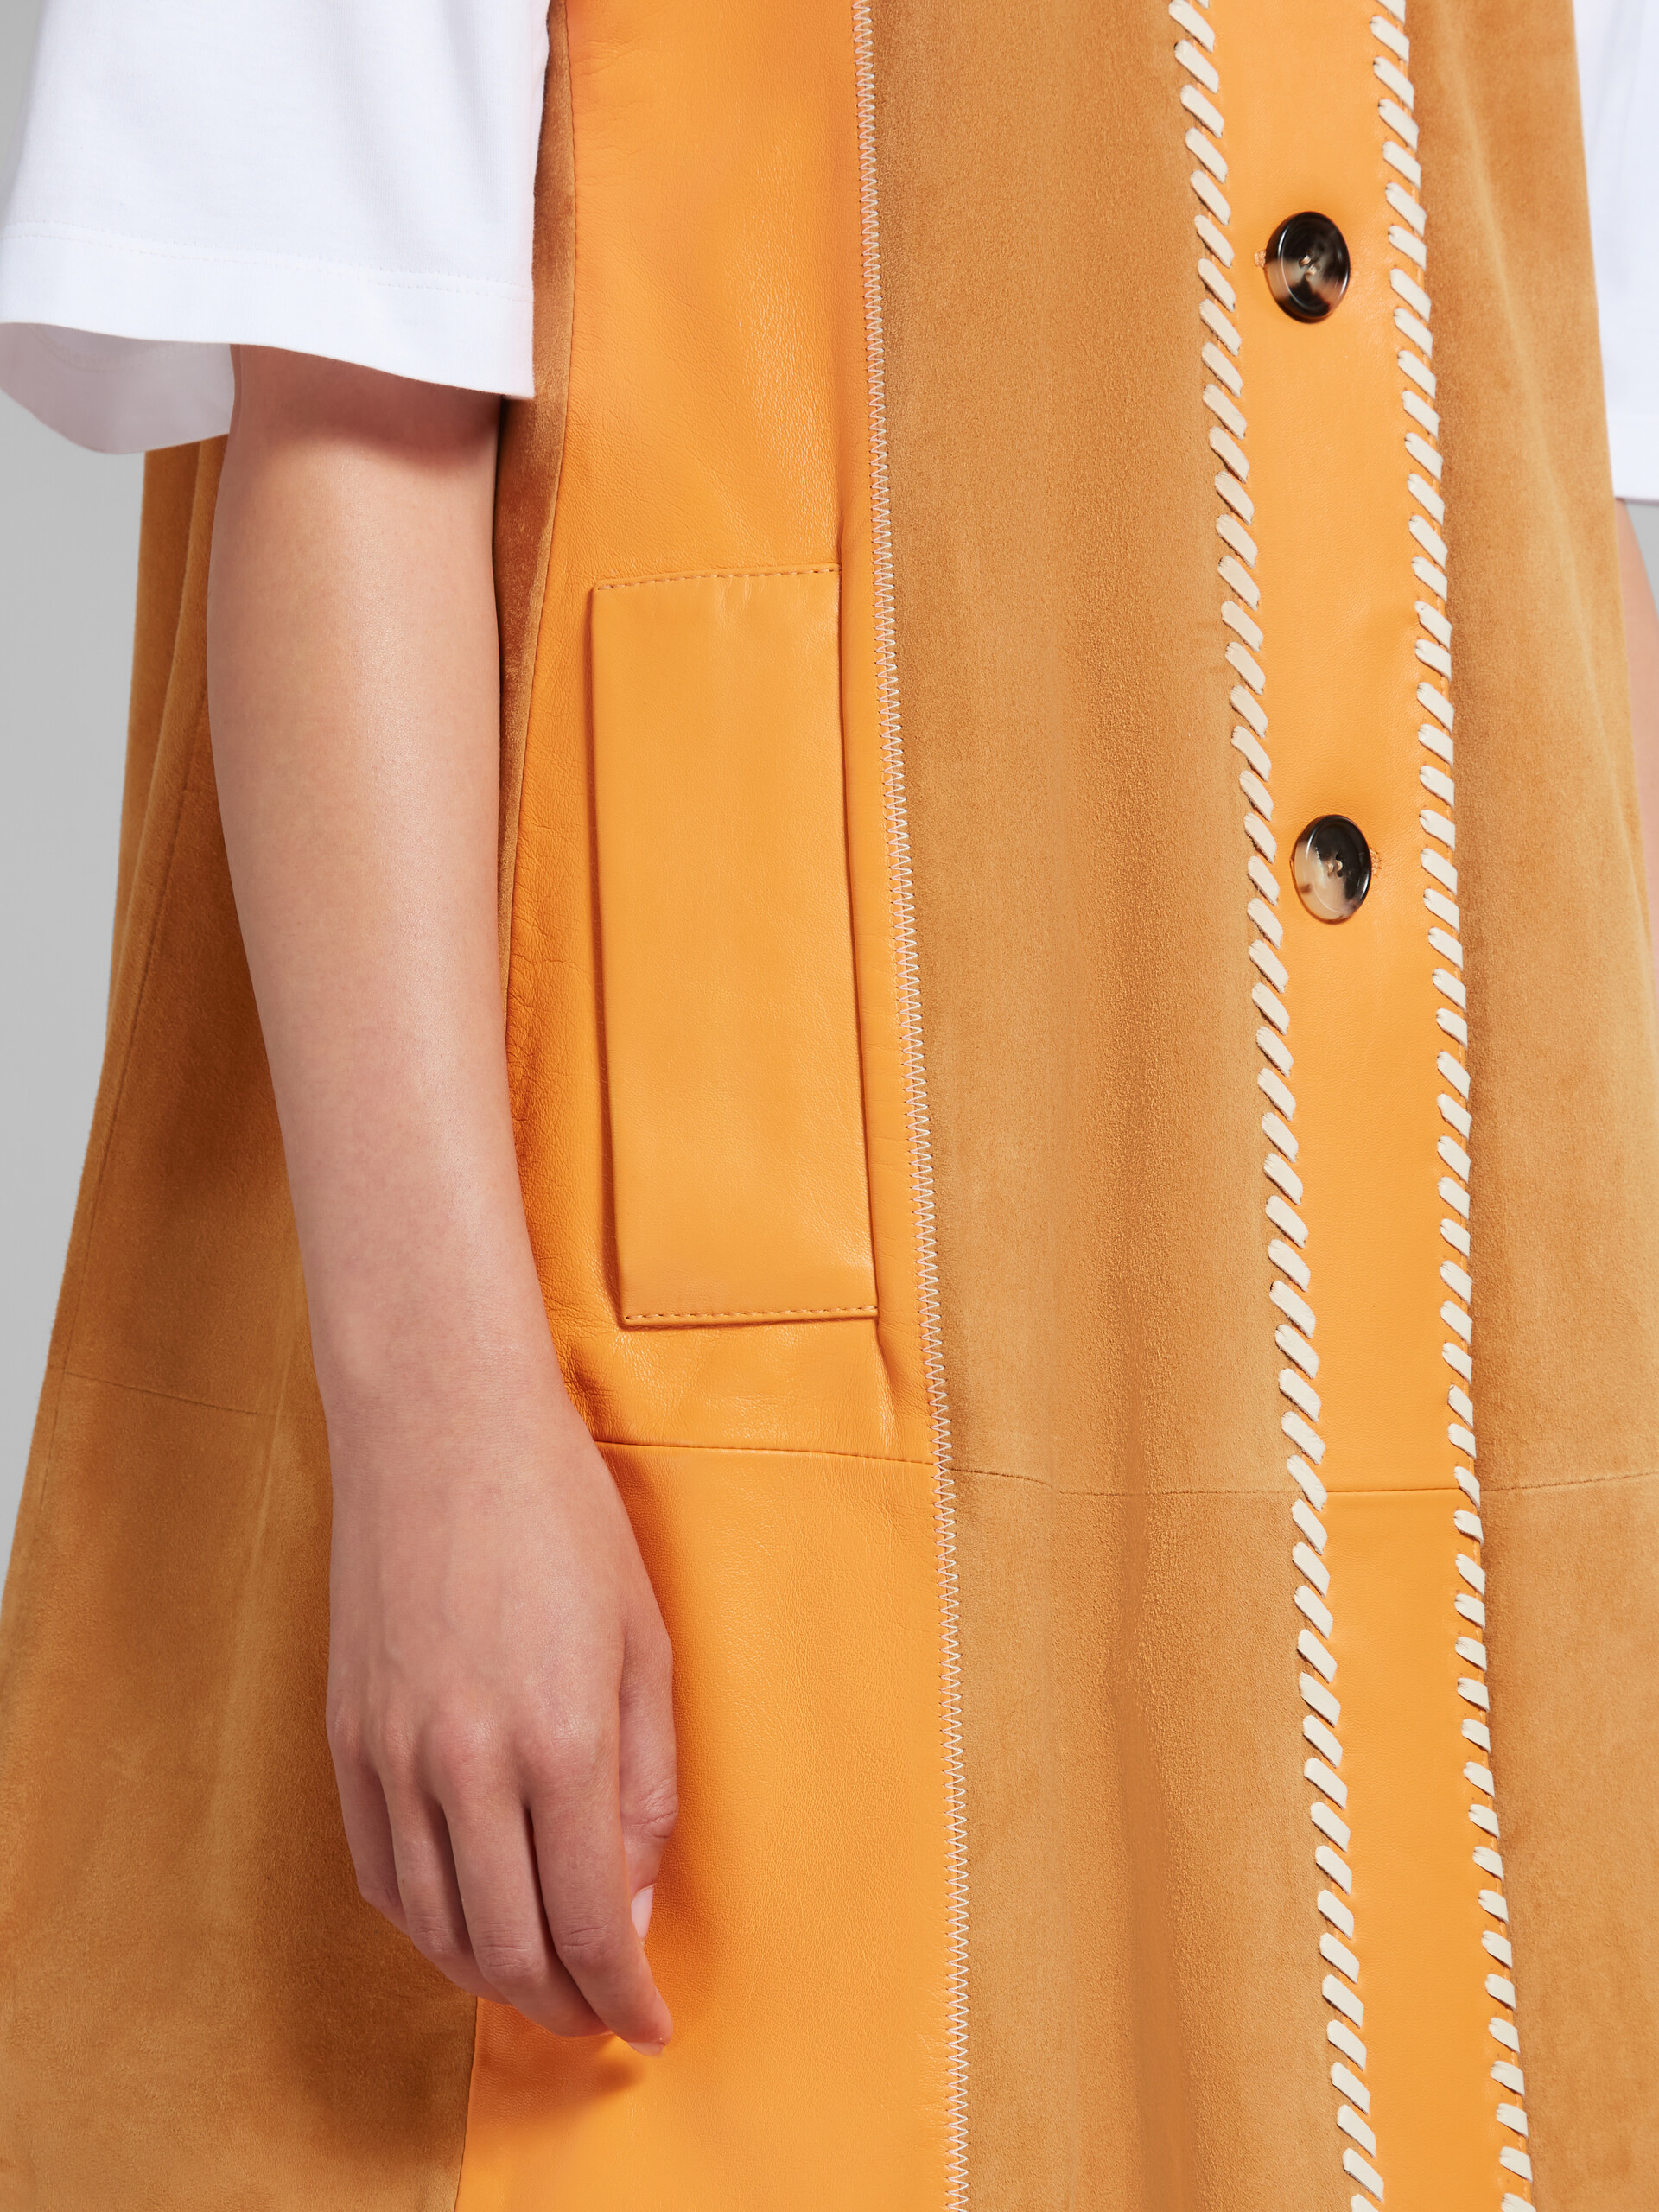 Vestito patchwork in suede e nappa arancione - Gilet - Image 5